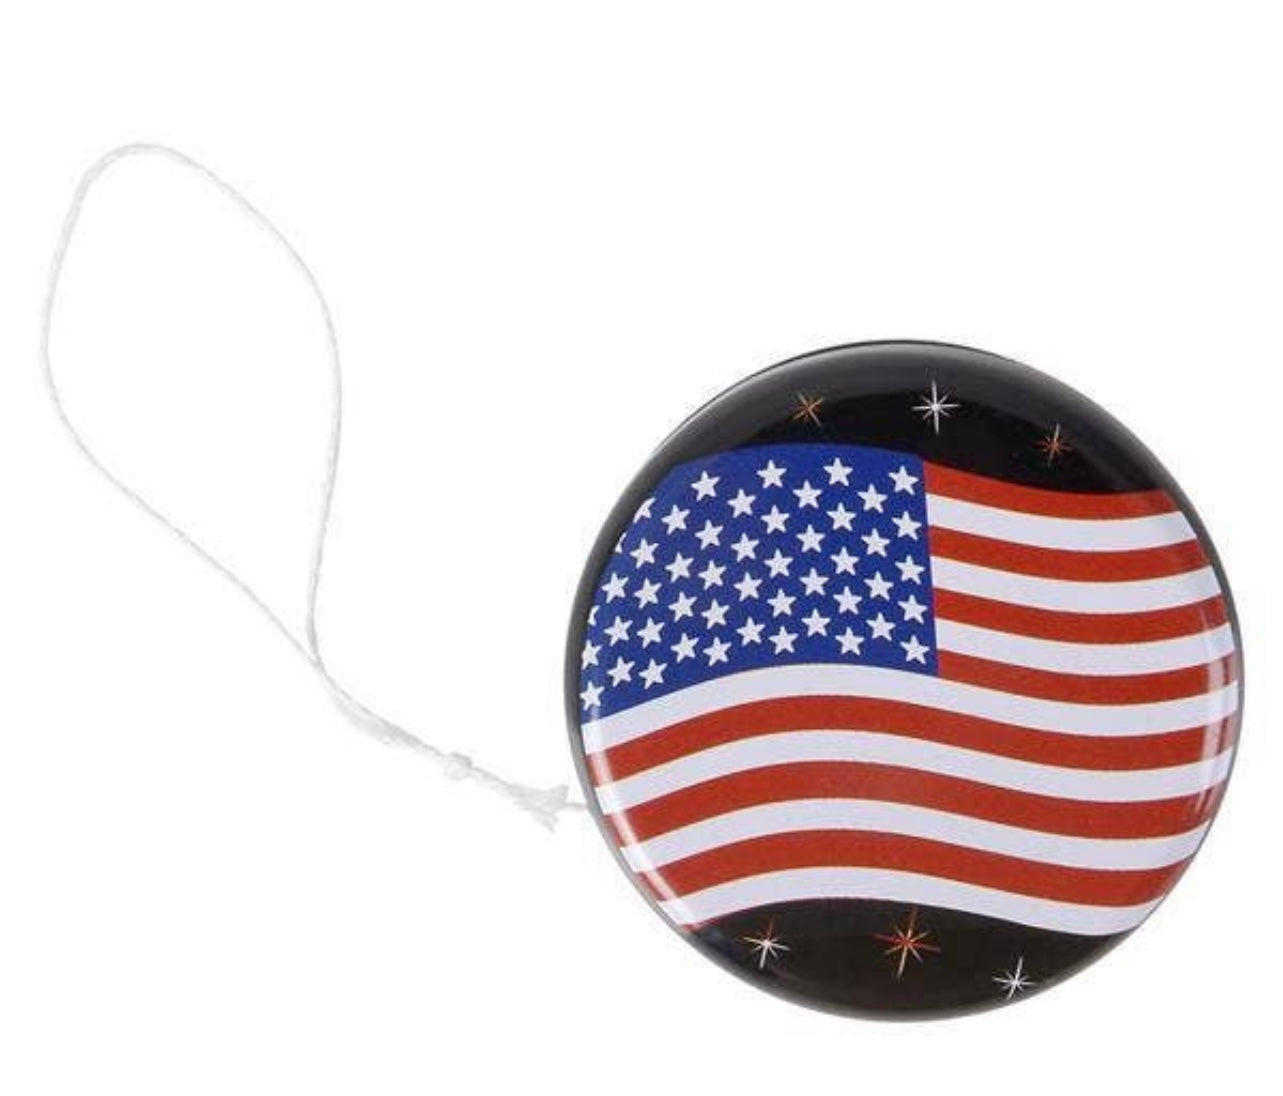 American flag yo-yo